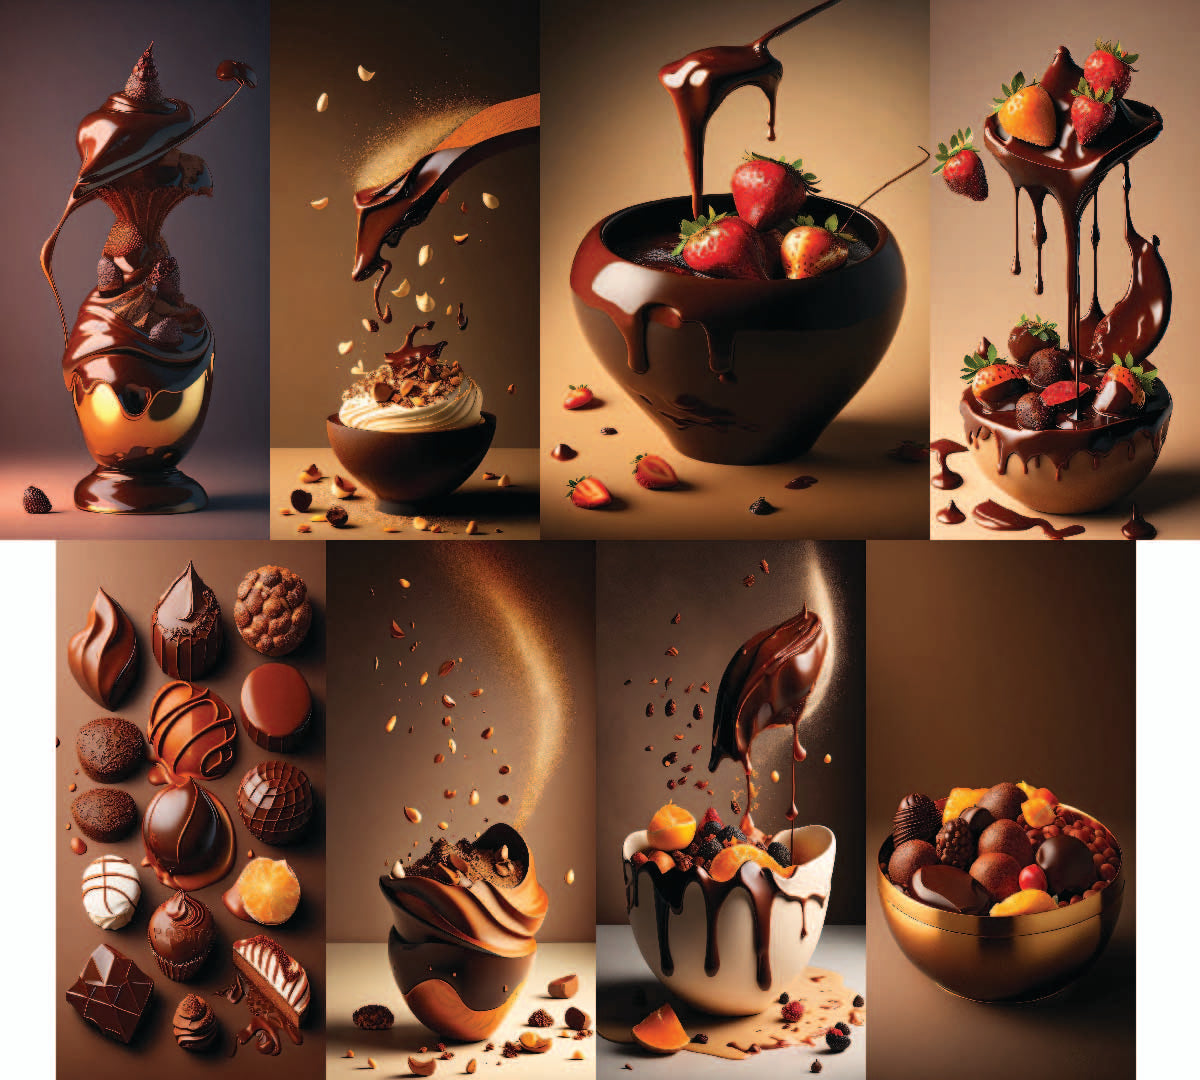 83 pièces « Chocolat et gâteaux » Restaurant Special Art Design Creators 3072 x 3072 1:1 et 1728 x 3072 16:9 Rapport d'aspect multiple Excellente résolution Utilisation personnelle ou commerciale SVG Mock up Logo